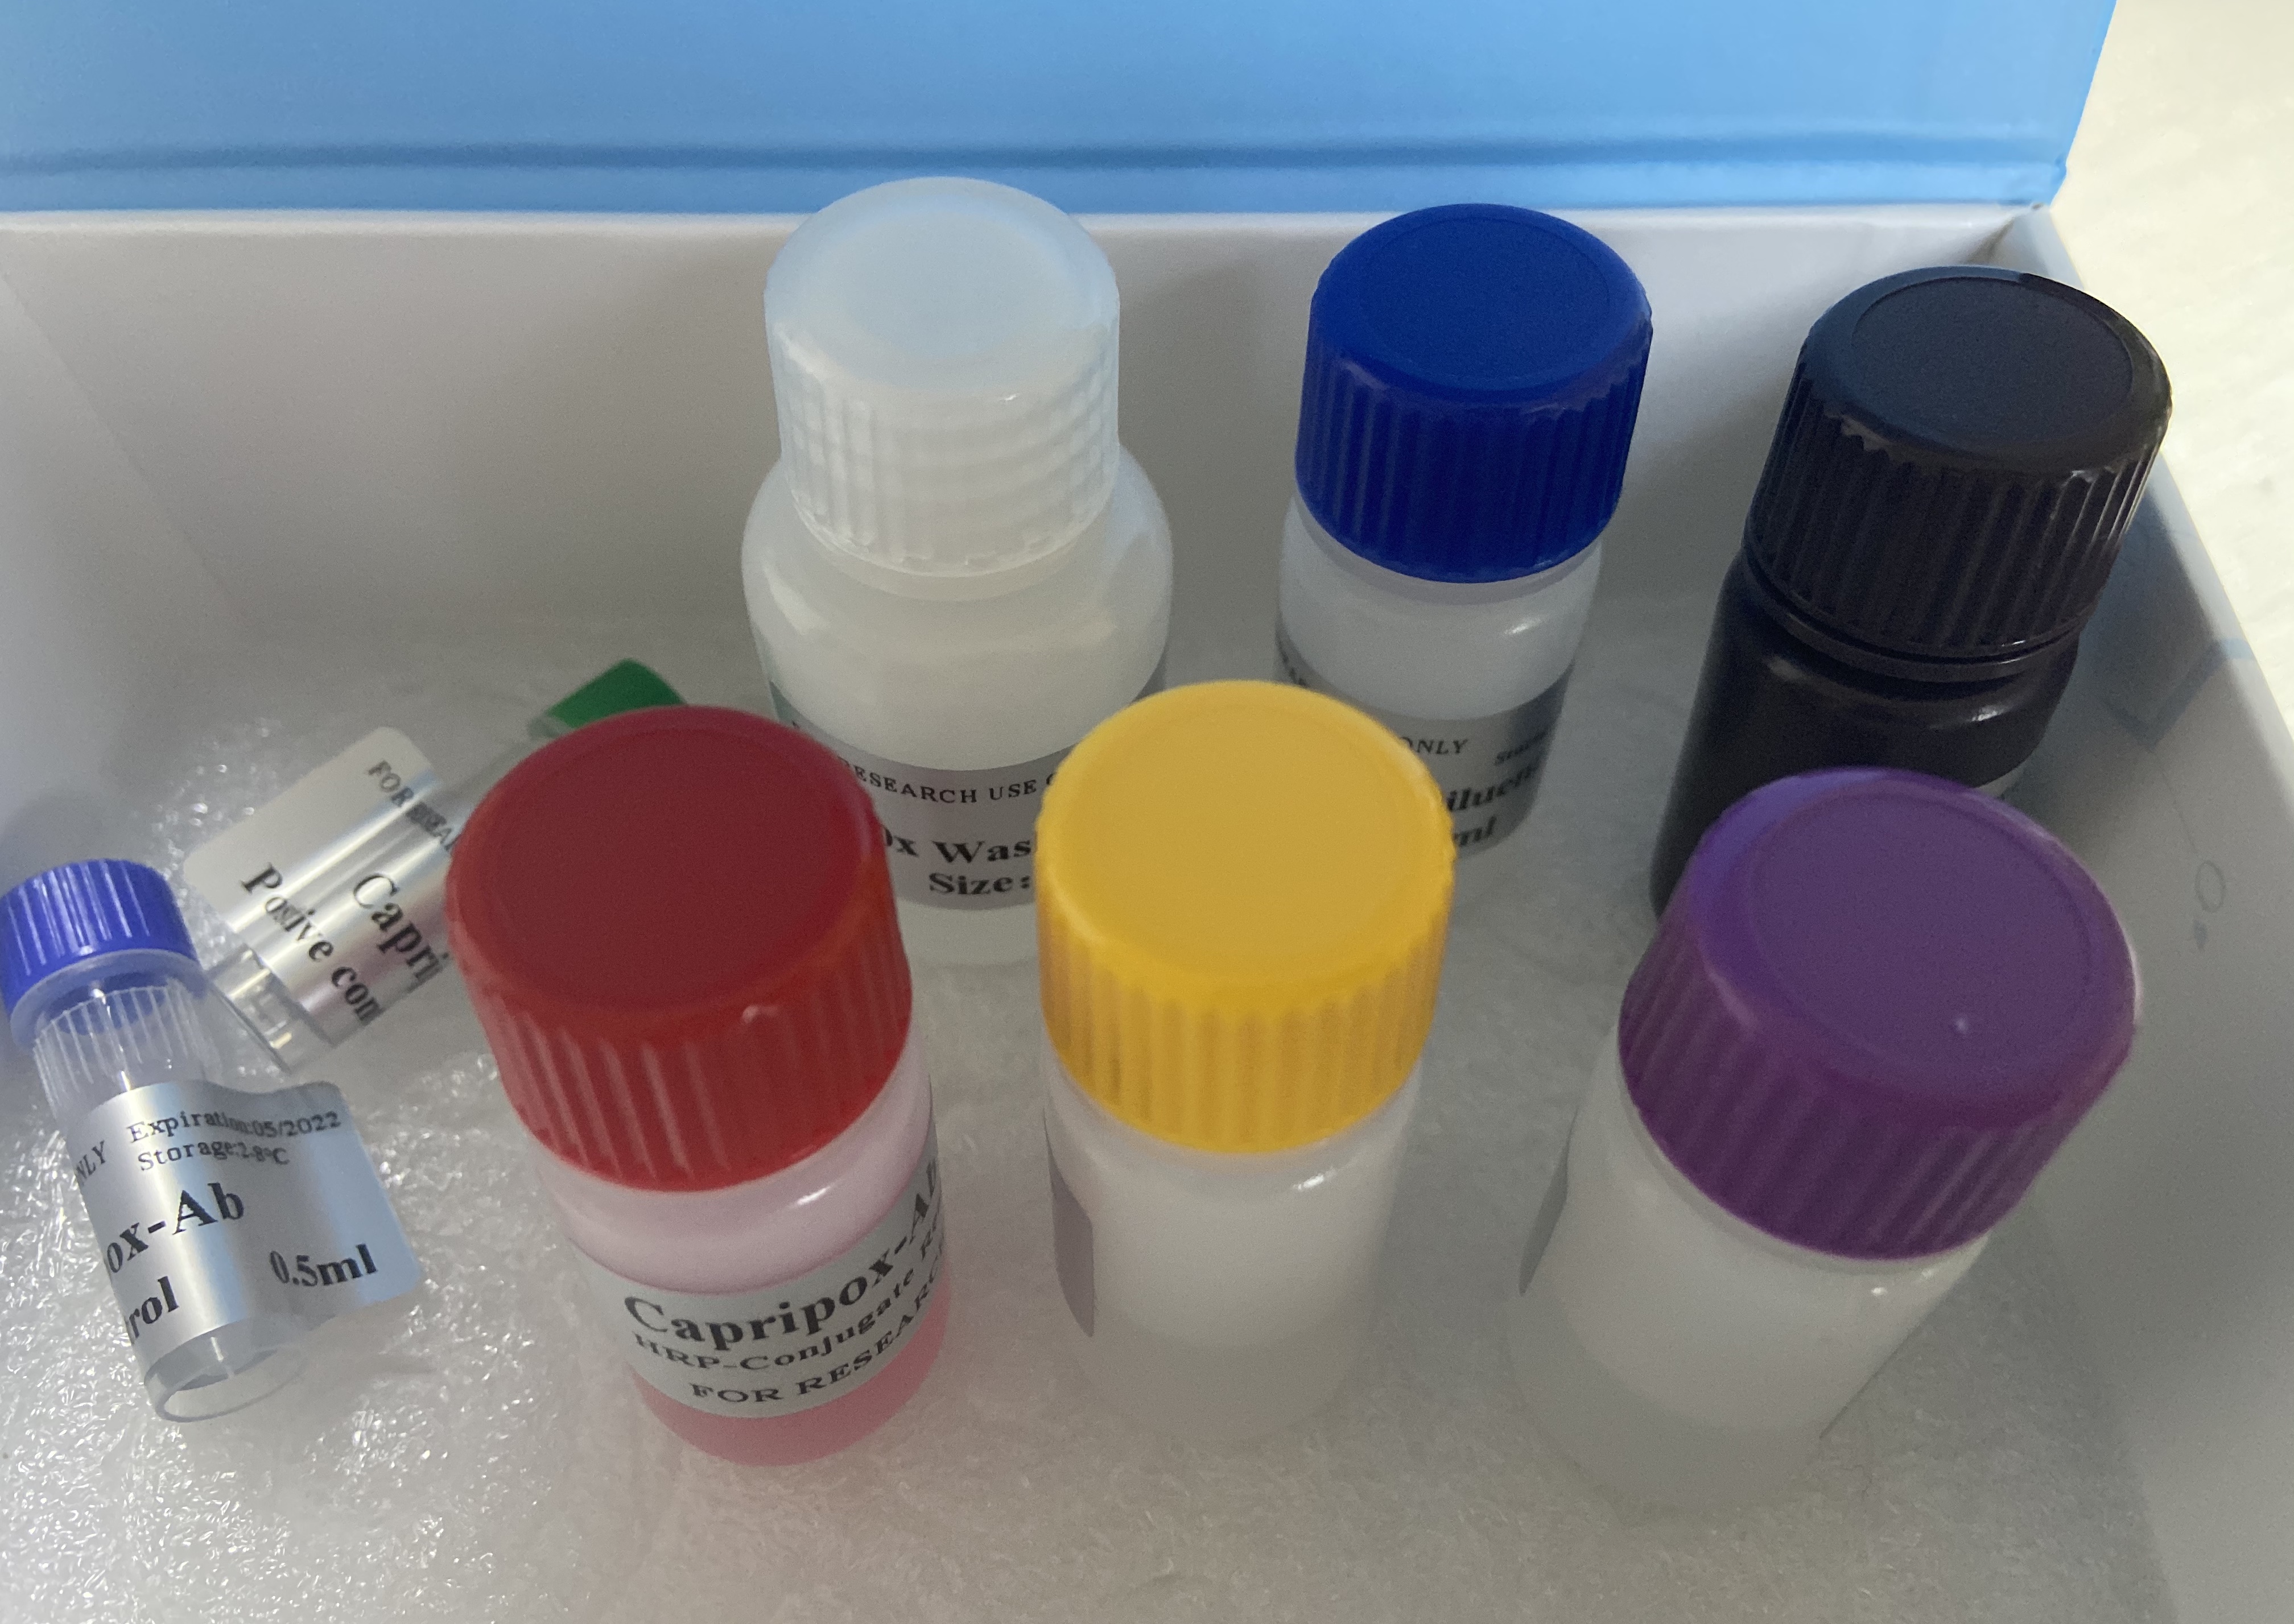 呕吐毒素检测试剂盒（酶联免疫法）